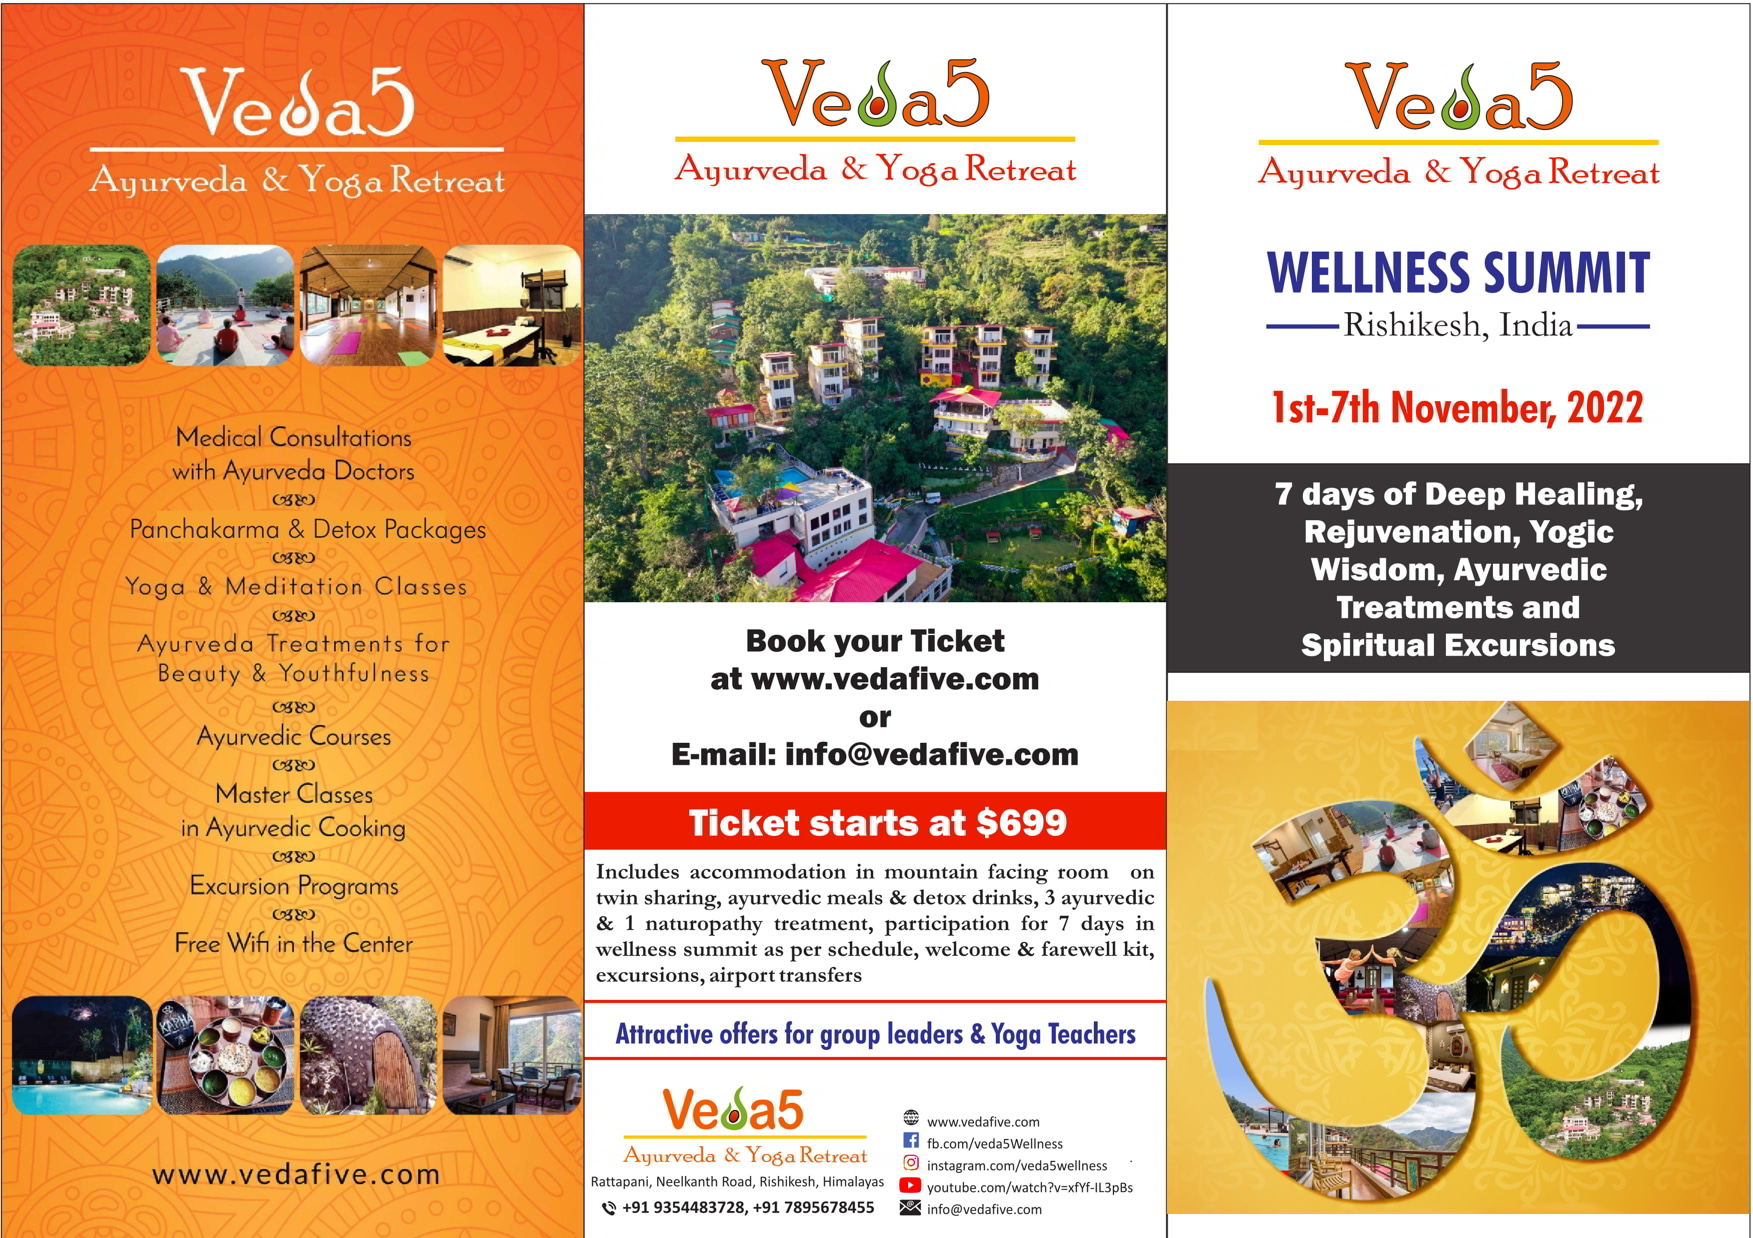 Rishikesh Wellness Summit 2022 Overview - Best Ayurveda Yoga Retreat Rishikesh - Veda5